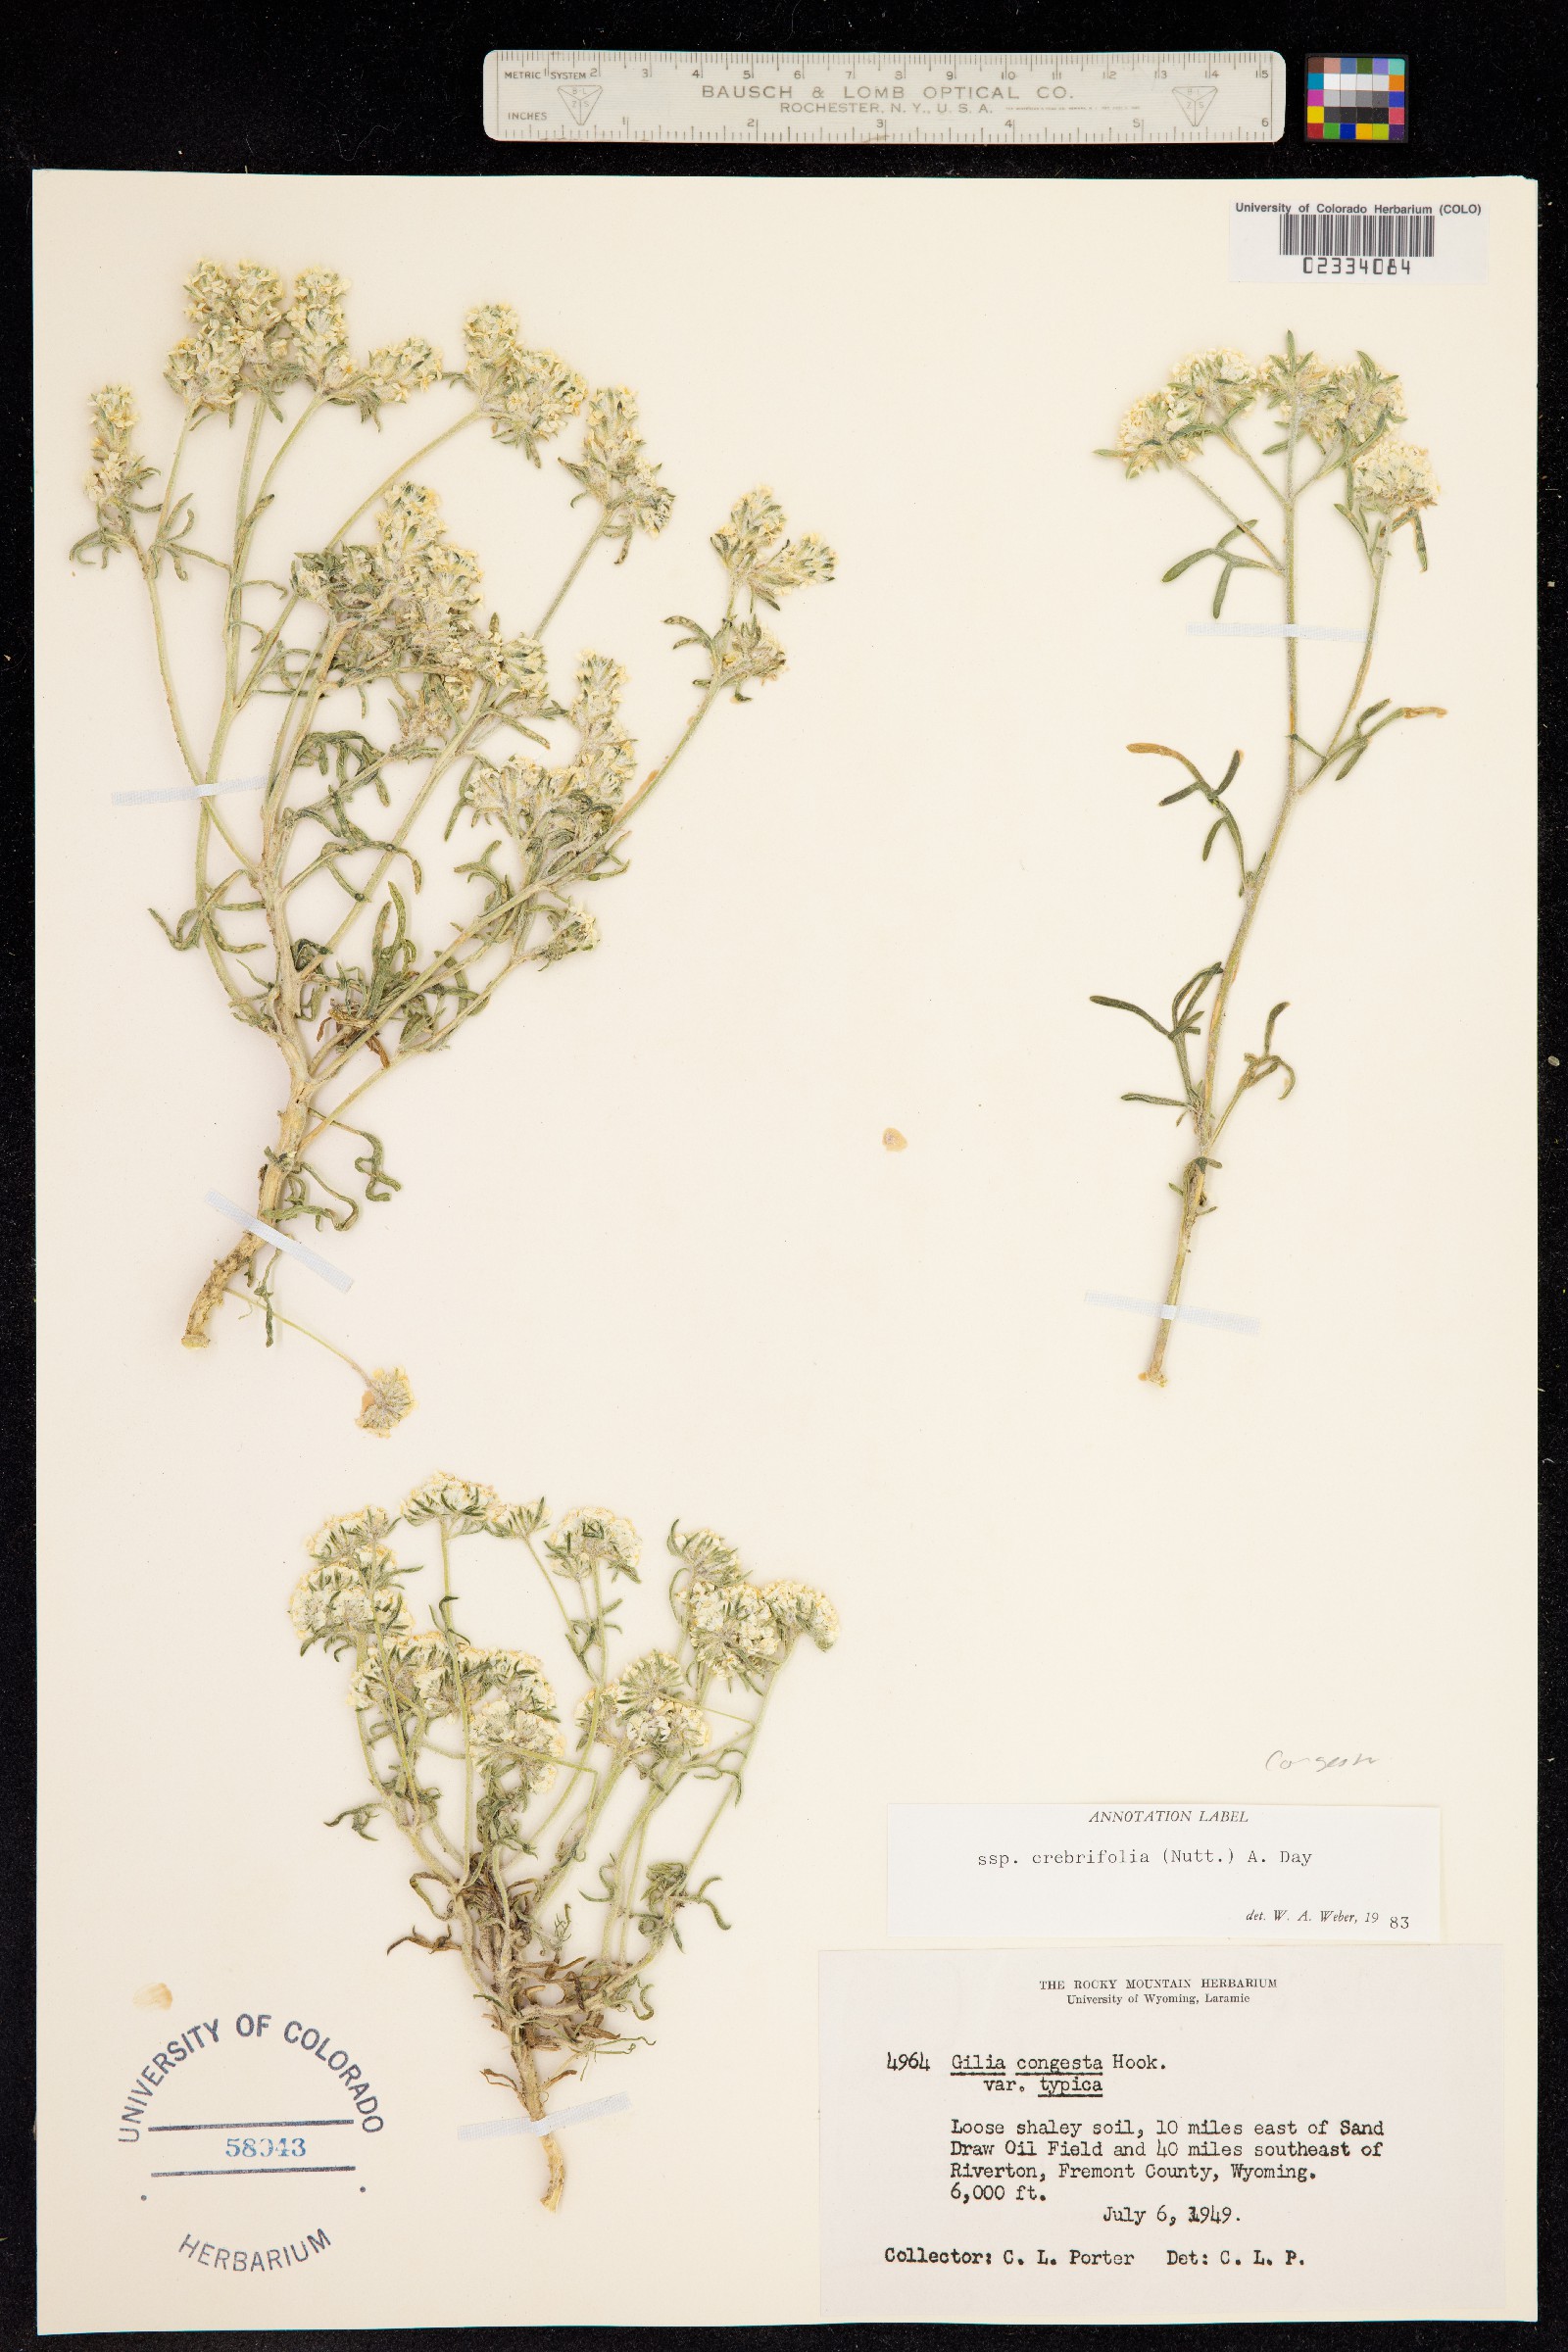 Ipomopsis congesta ssp. crebrifolia image